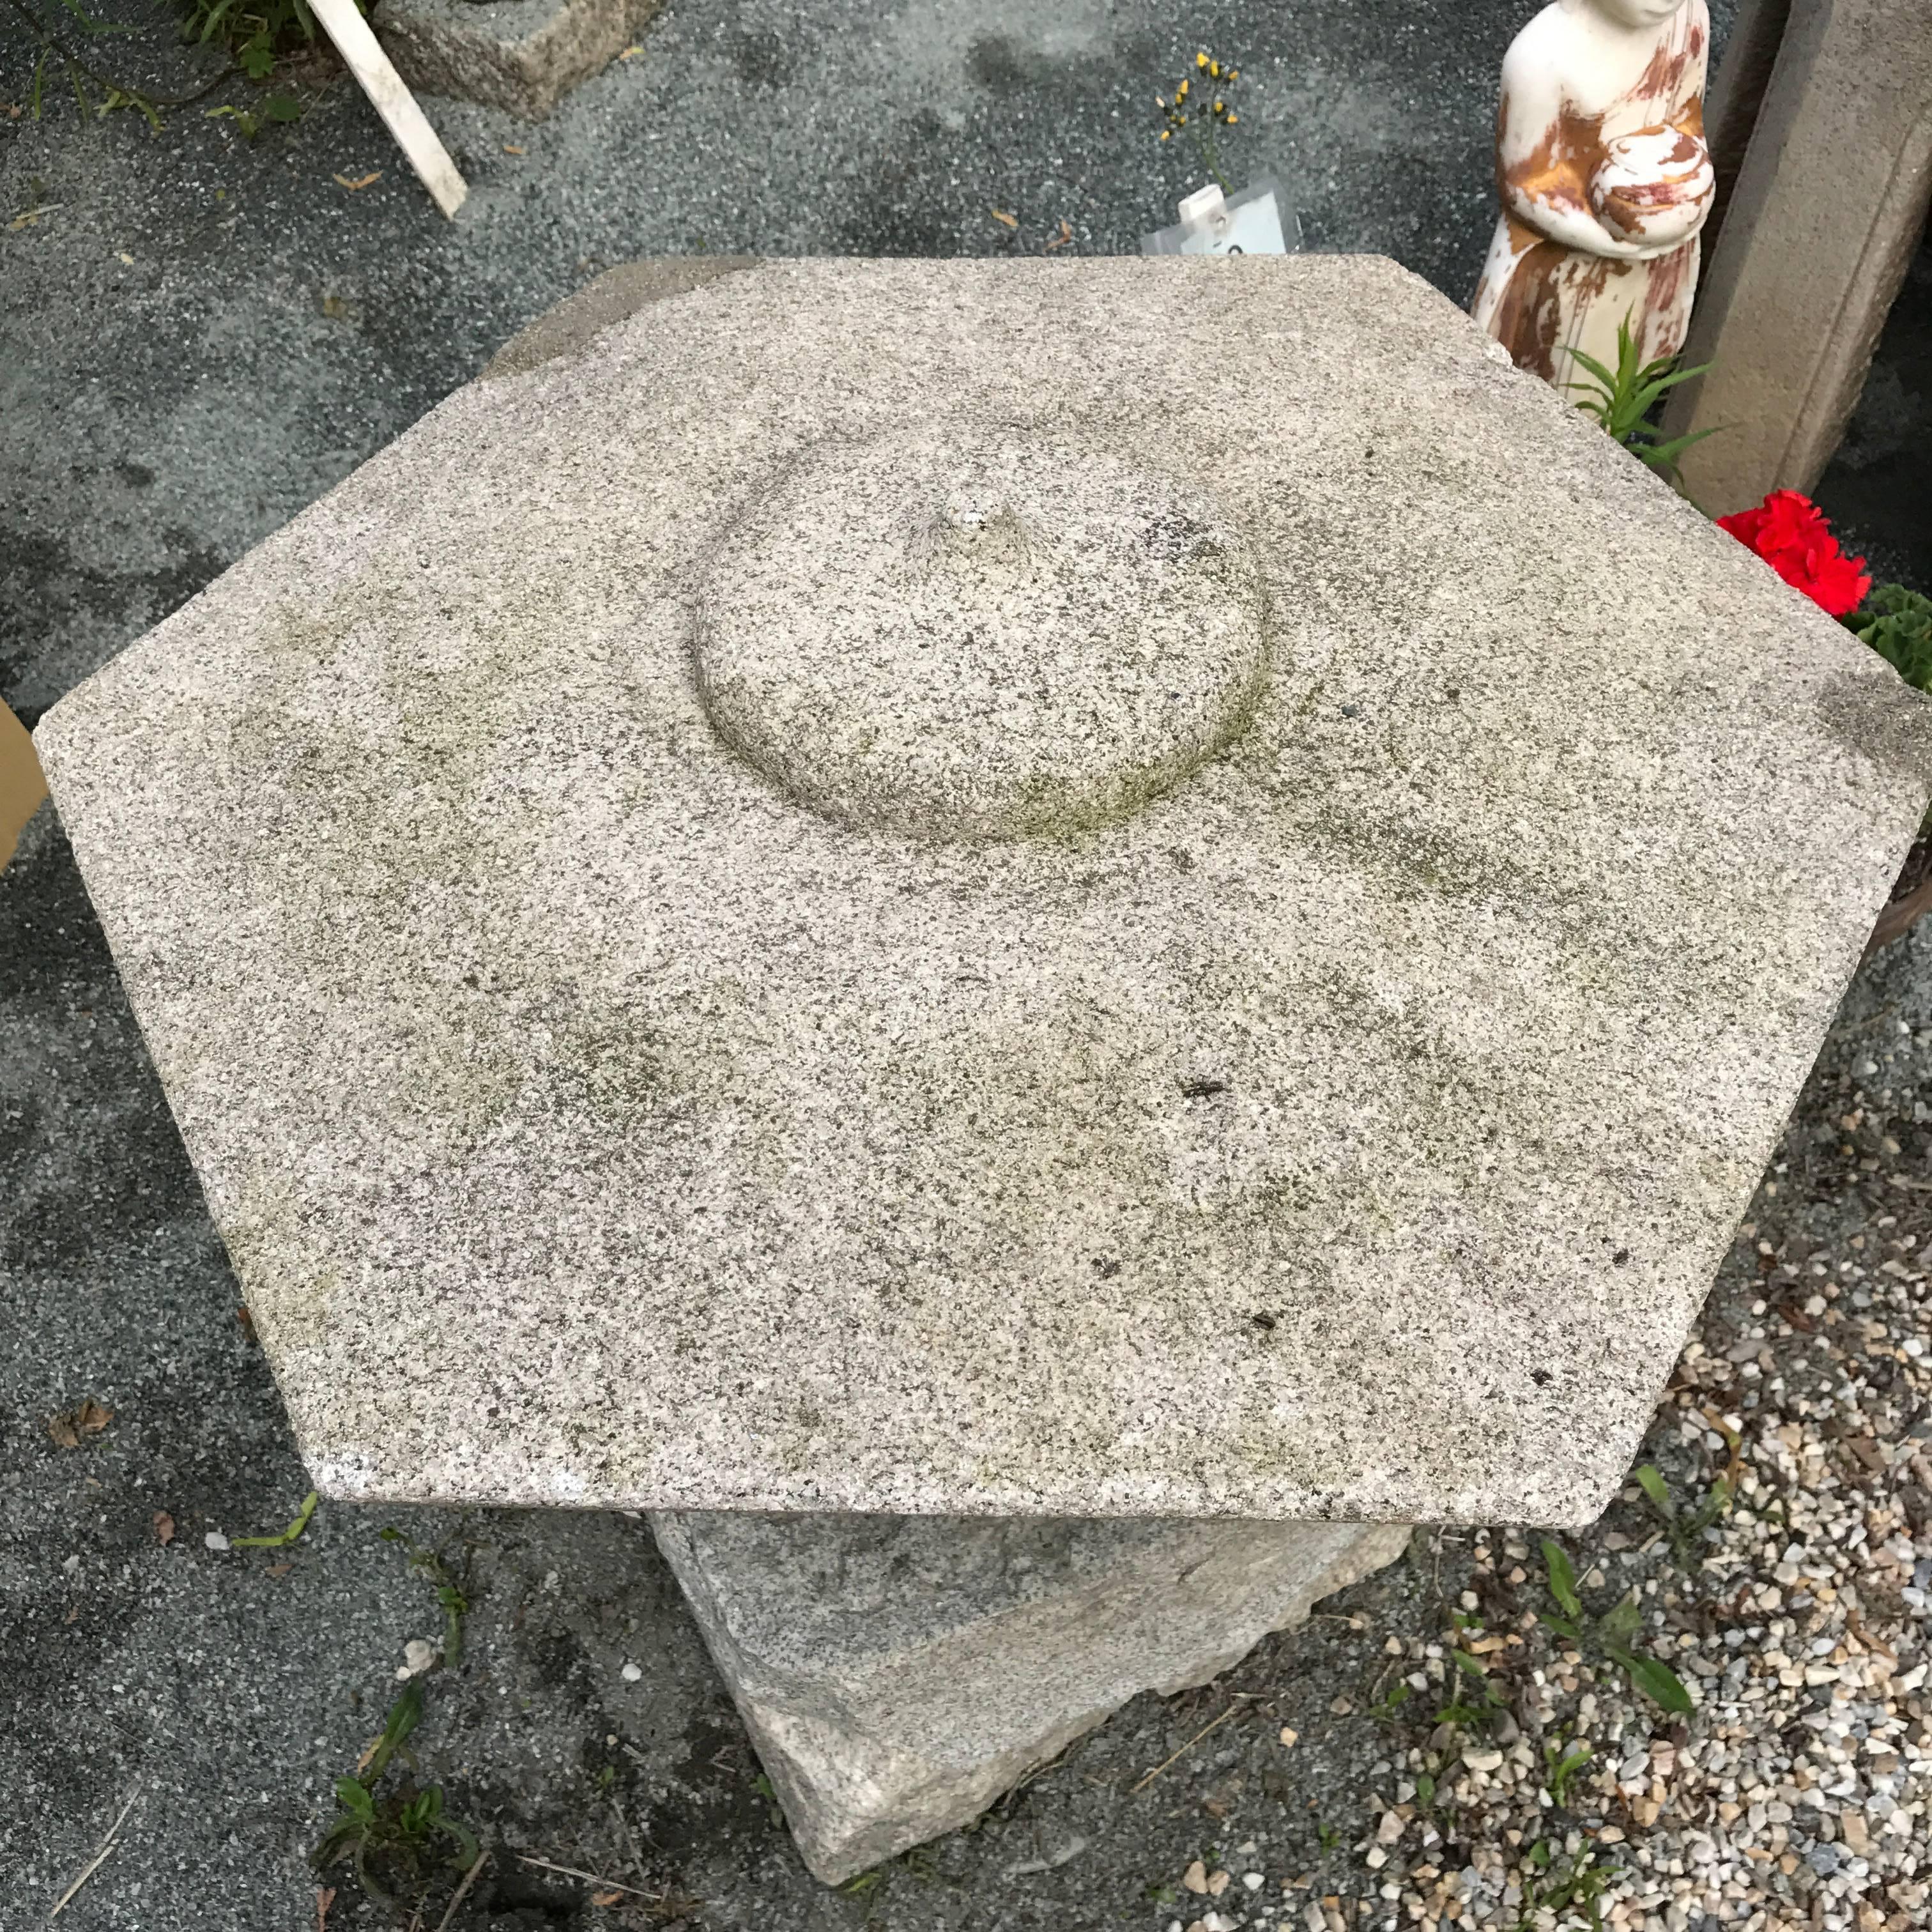 Taisho Japanese Antique Stone Lantern